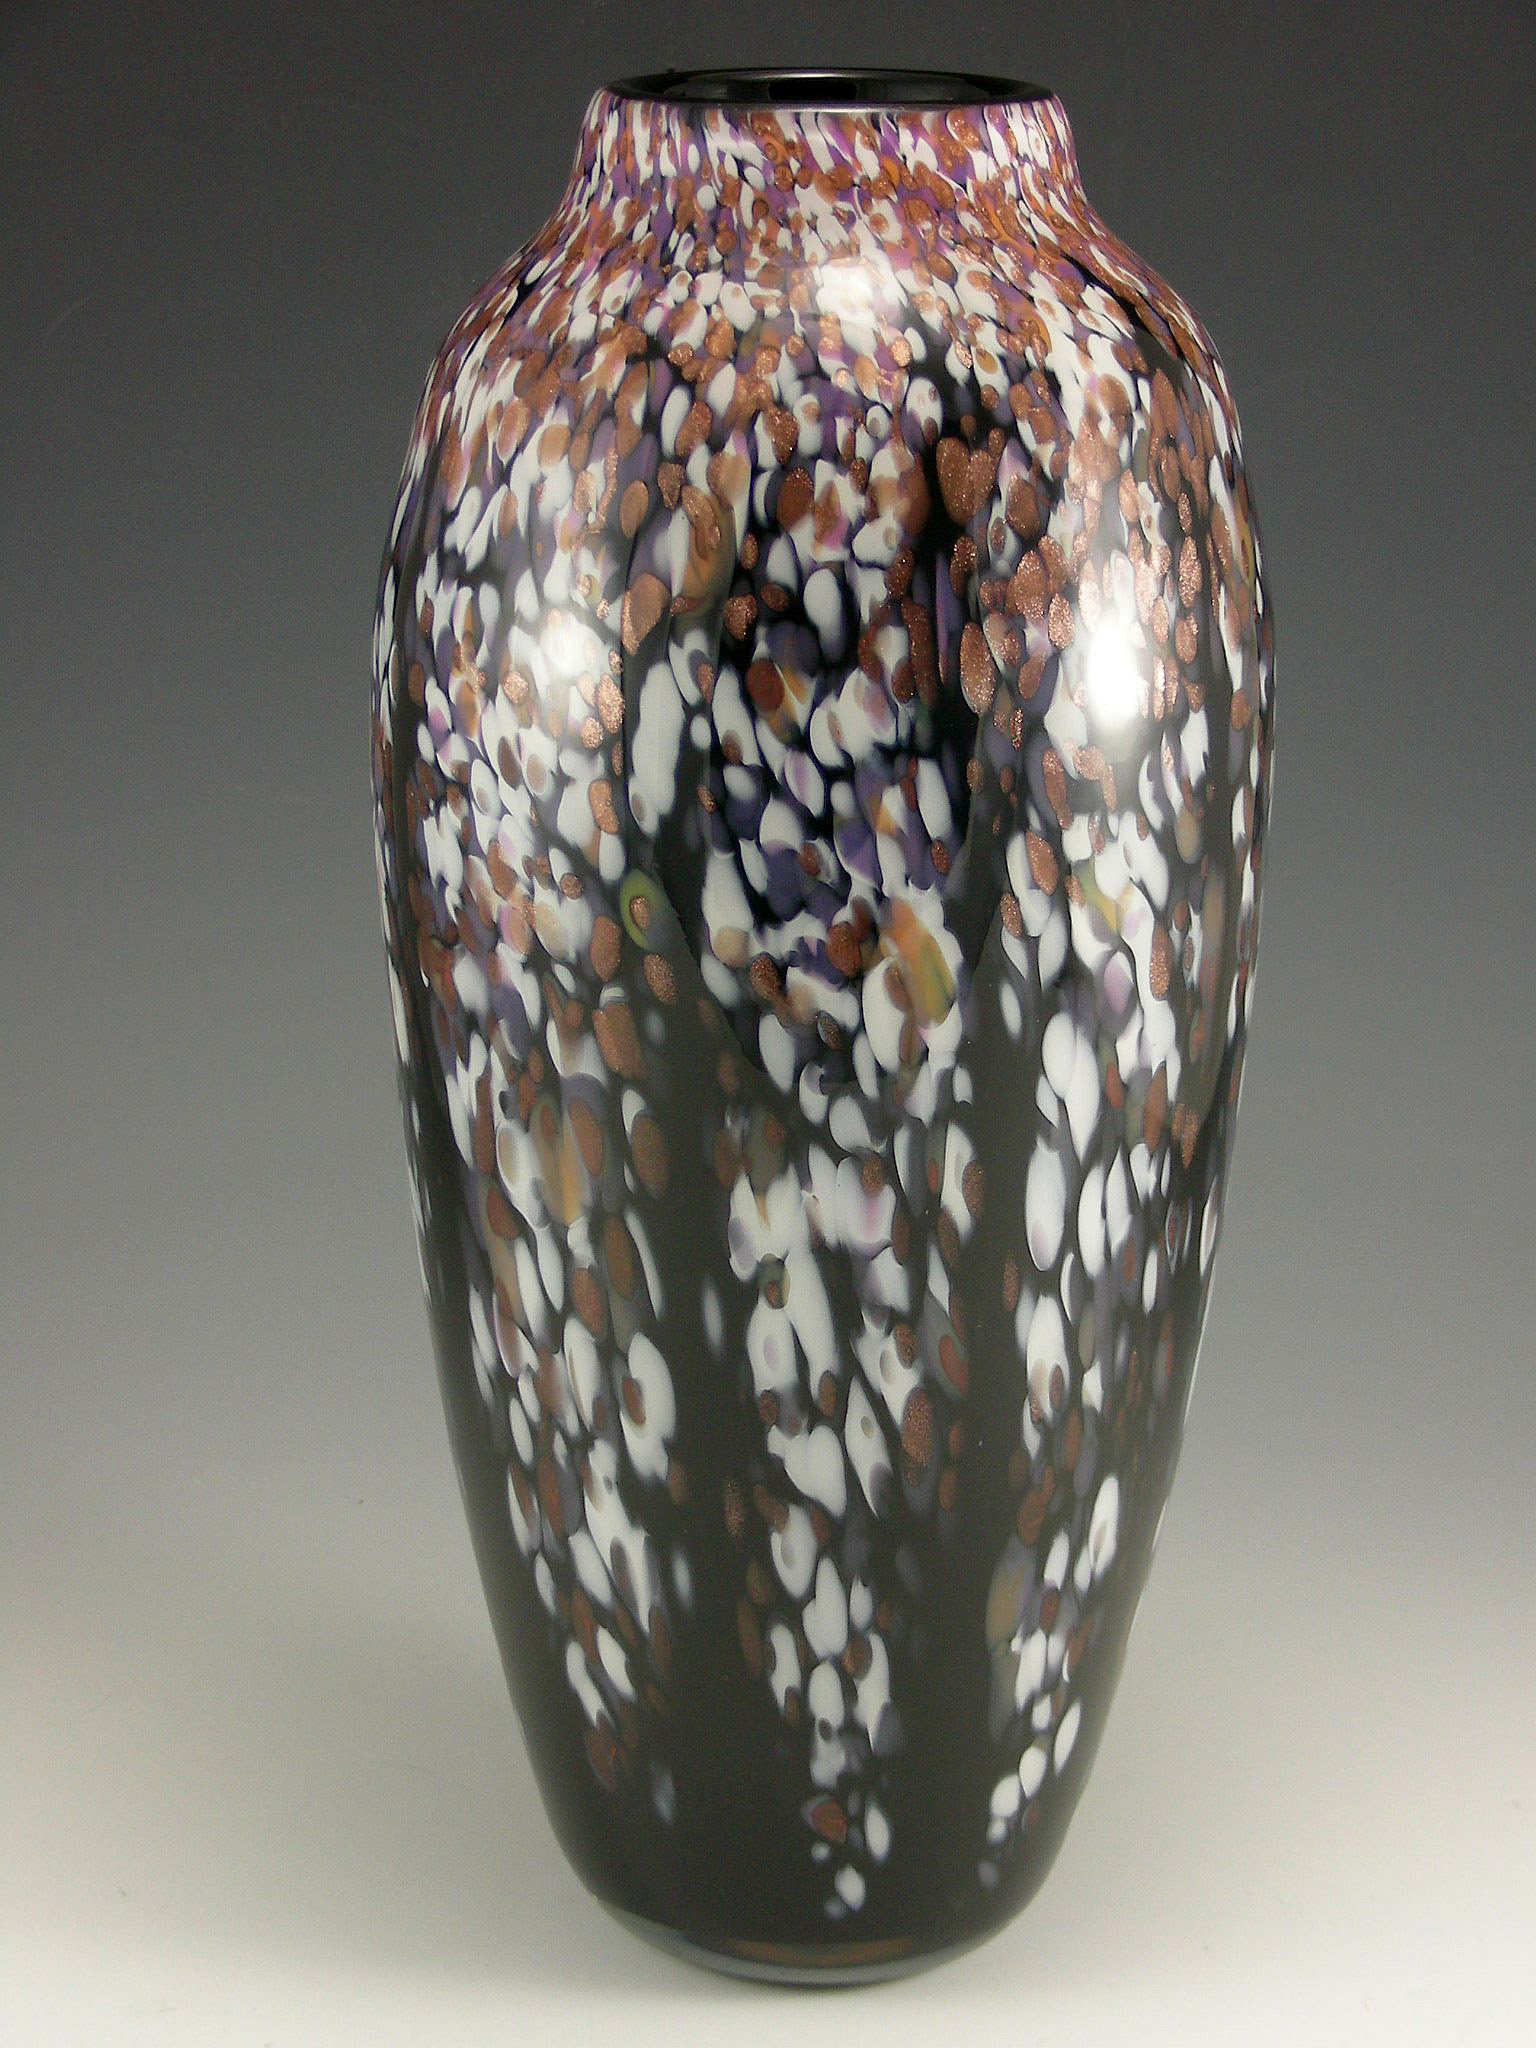 Classic Winter Wisteria Vase by Mark Rosenbaum (Art Glass Vase